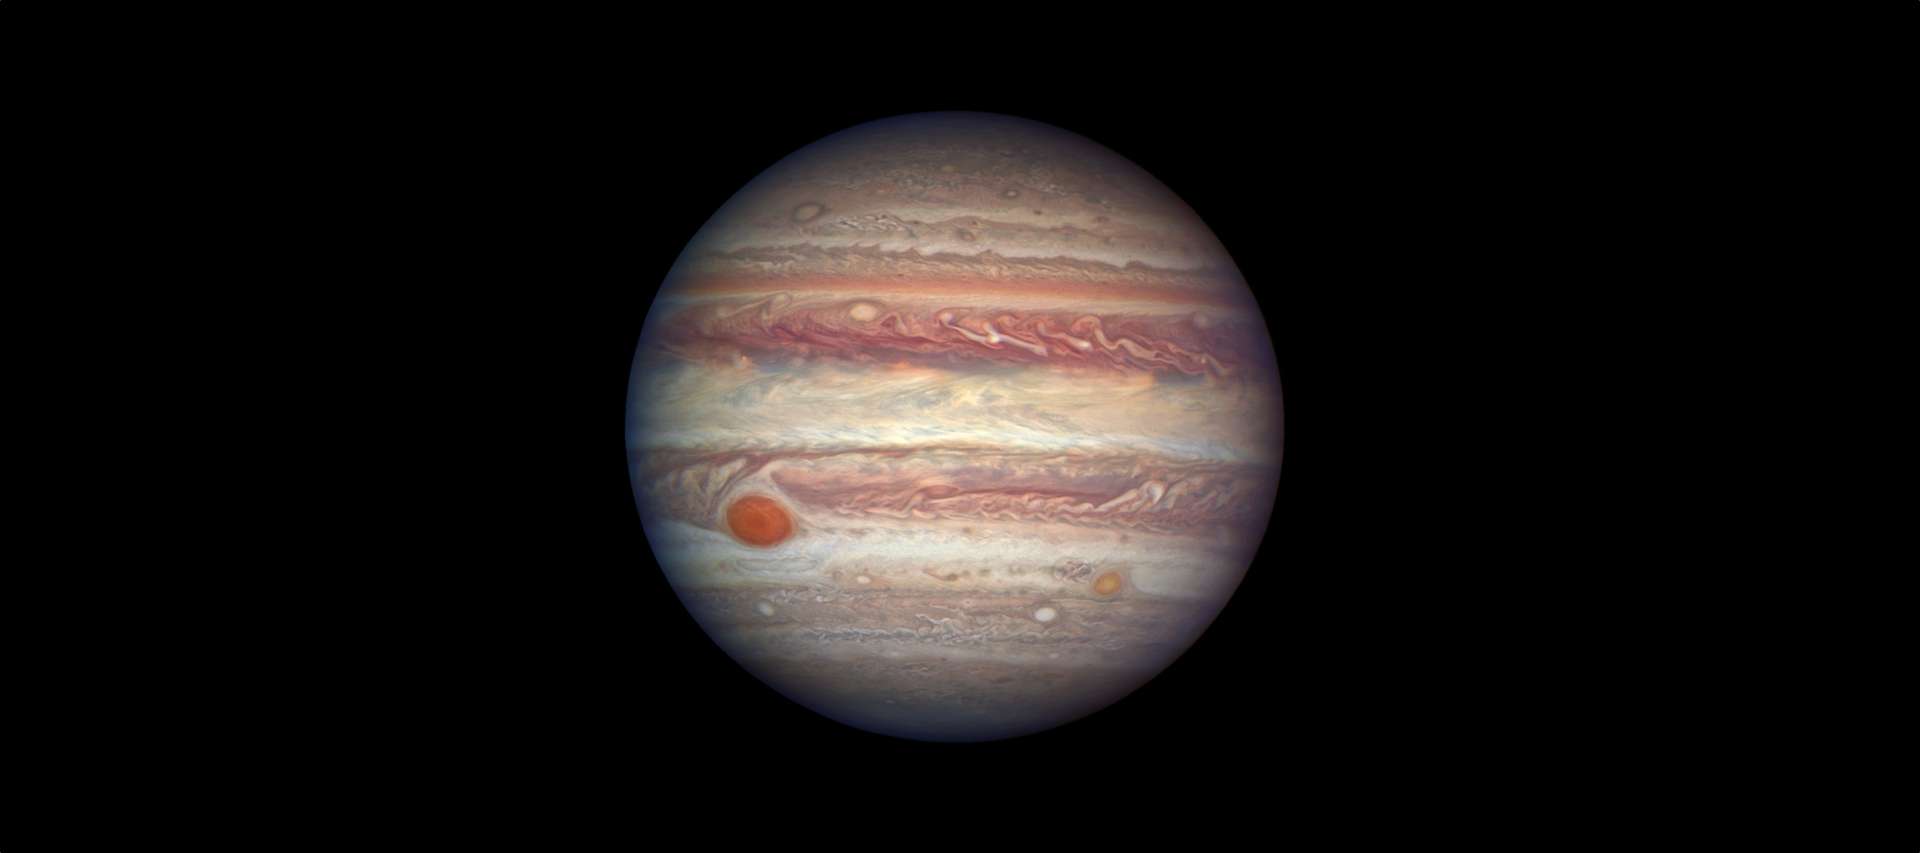 Jupiter,&nbsp;le 3 avril 2017. La résolution d’Hubble offre des détails de son atmosphère atteignant 130 km. La planète géante était à moins de 670 millions de kilomètres de la Terre, à quelques jours de son opposition. © Nasa, ESA, A. Simon (GSFC)&nbsp;